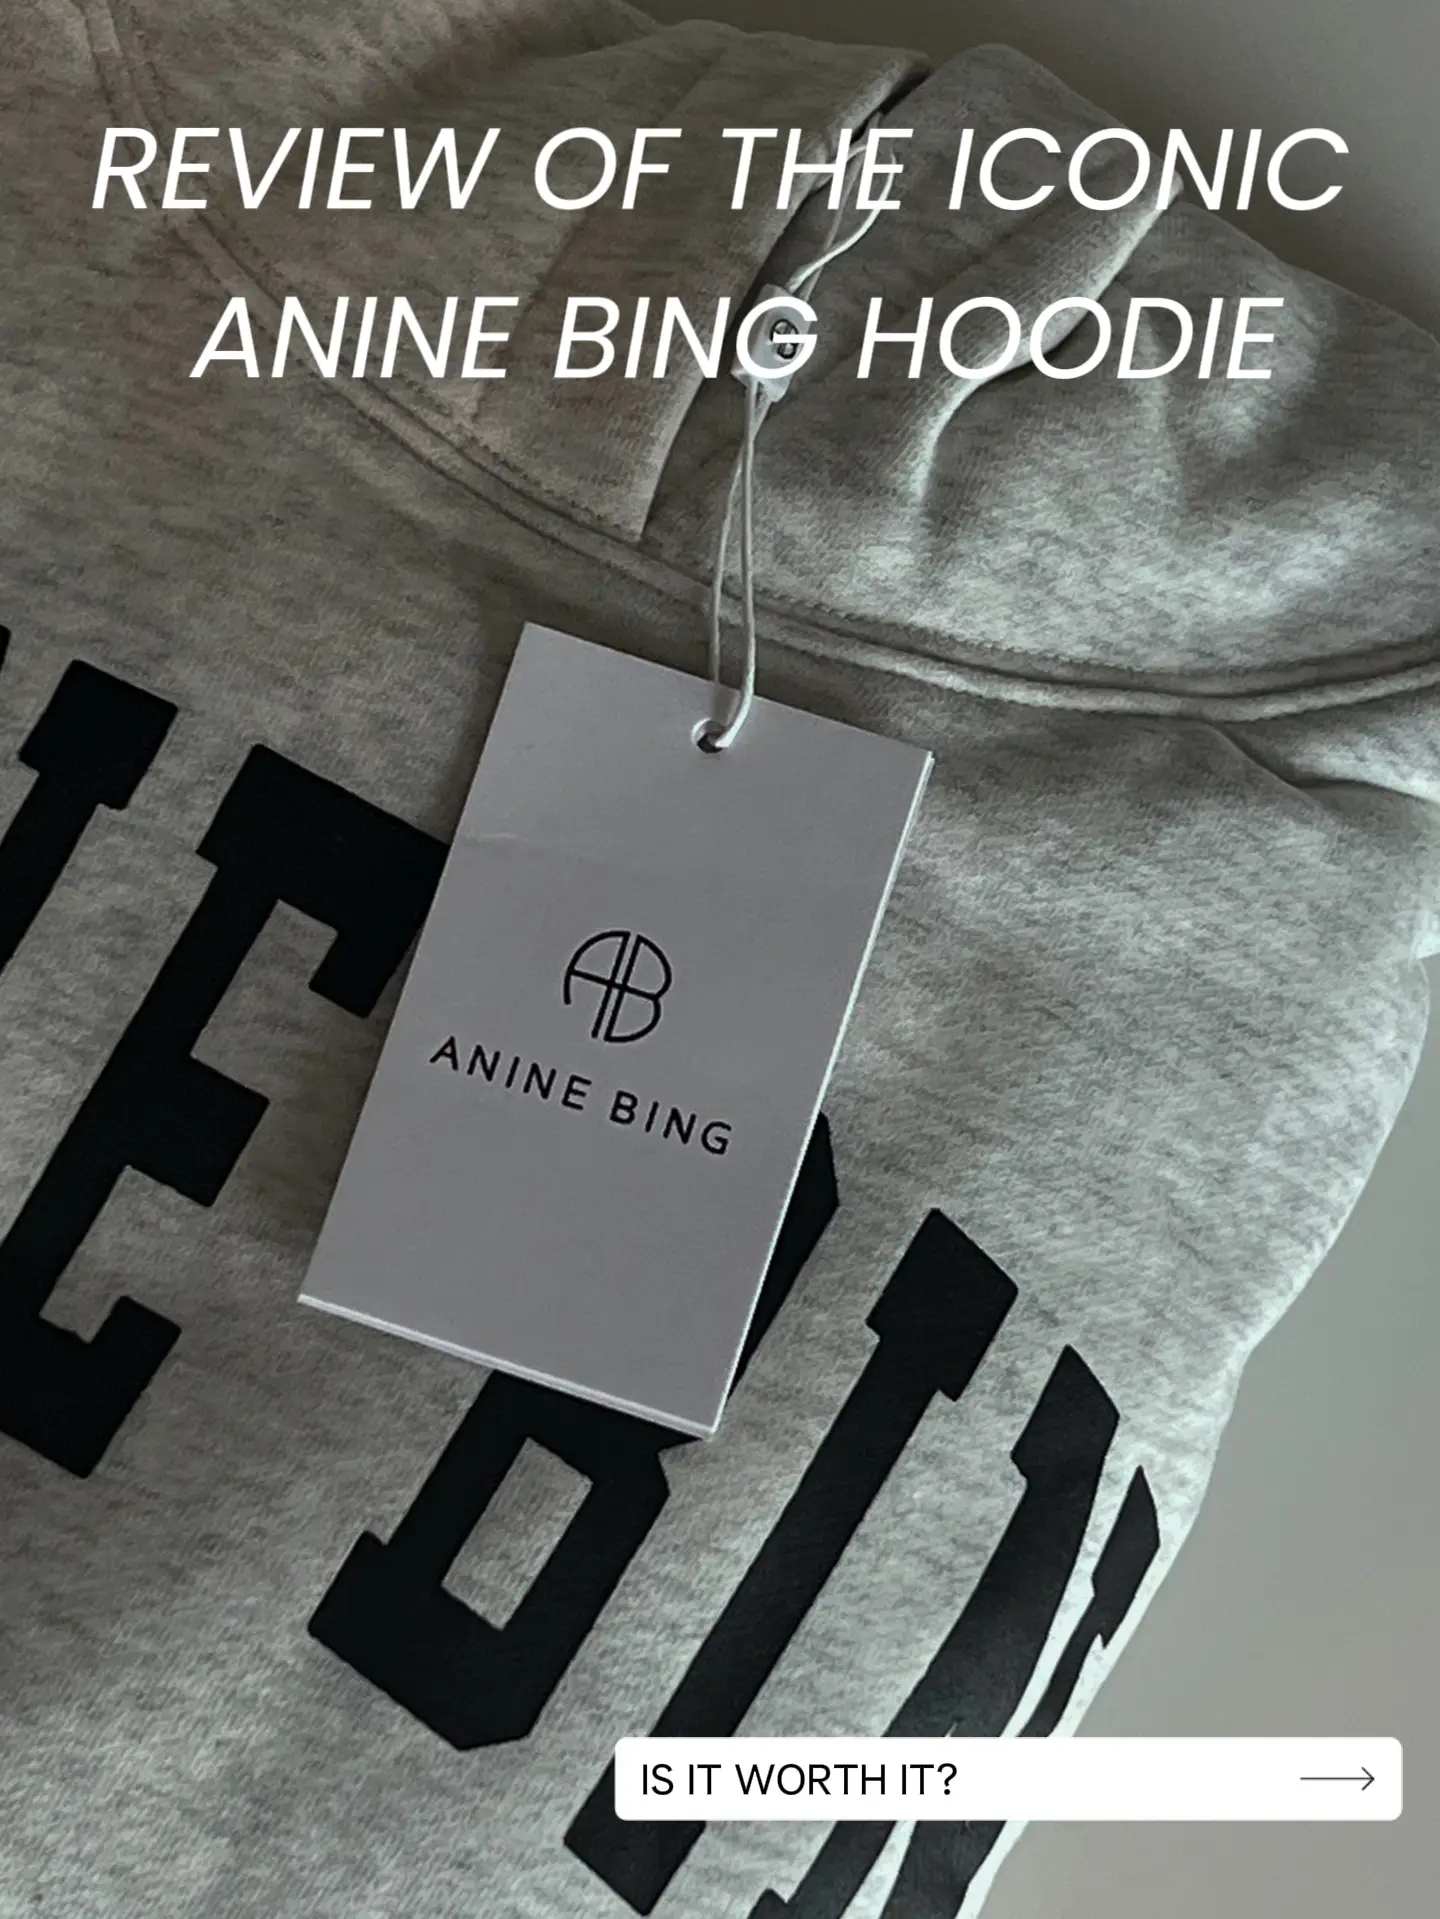 Anine Bing Hoodie